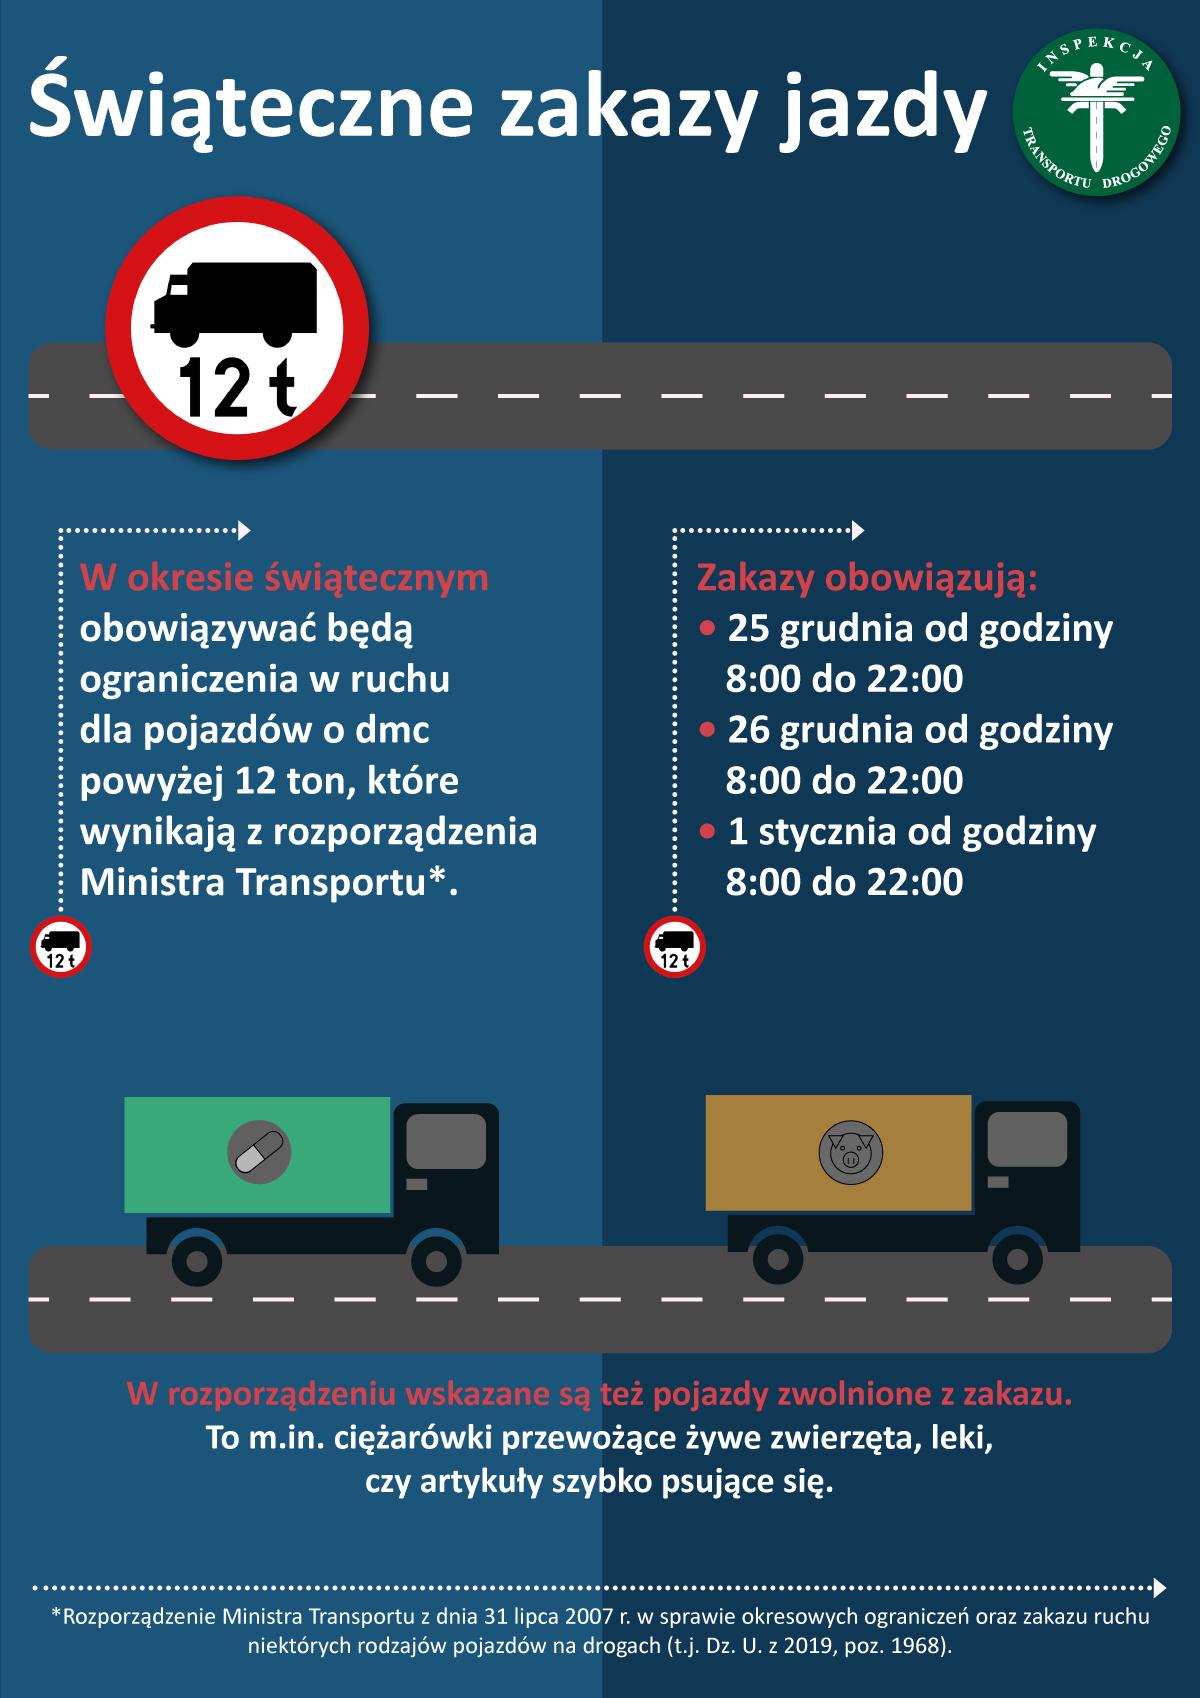 Infografika "Świąteczne zakazy jazdy"